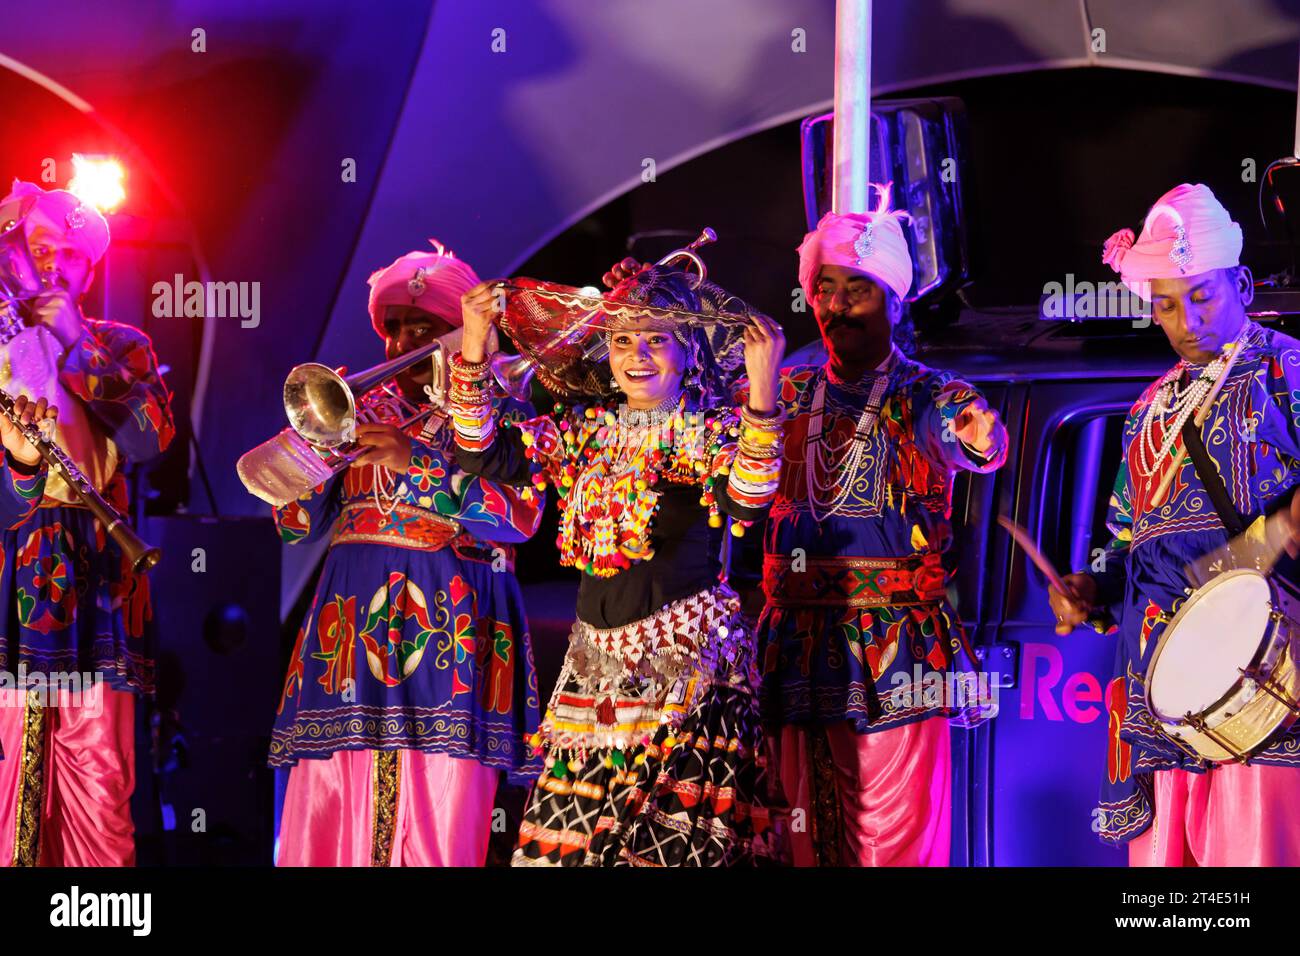 Leicesters Feier von Diwali ist bekannt als eines der größten außerhalb Indiens. Die Musiker und Tänzer, die während des Eröffnungsabends der Diwali-Feier auf dem Cossington Recreation Ground abgebildet wurden. Das Festival of Light ist einer der Höhepunkte des kulturellen Kalenders der Stadt und bietet Besuchern die Möglichkeit, die unglaubliche Lichtshow, das Feuerwerk und das Essen zu genießen und sogar eine Fahrt mit dem Rad des Lichts zu Unternehmen. Stockfoto